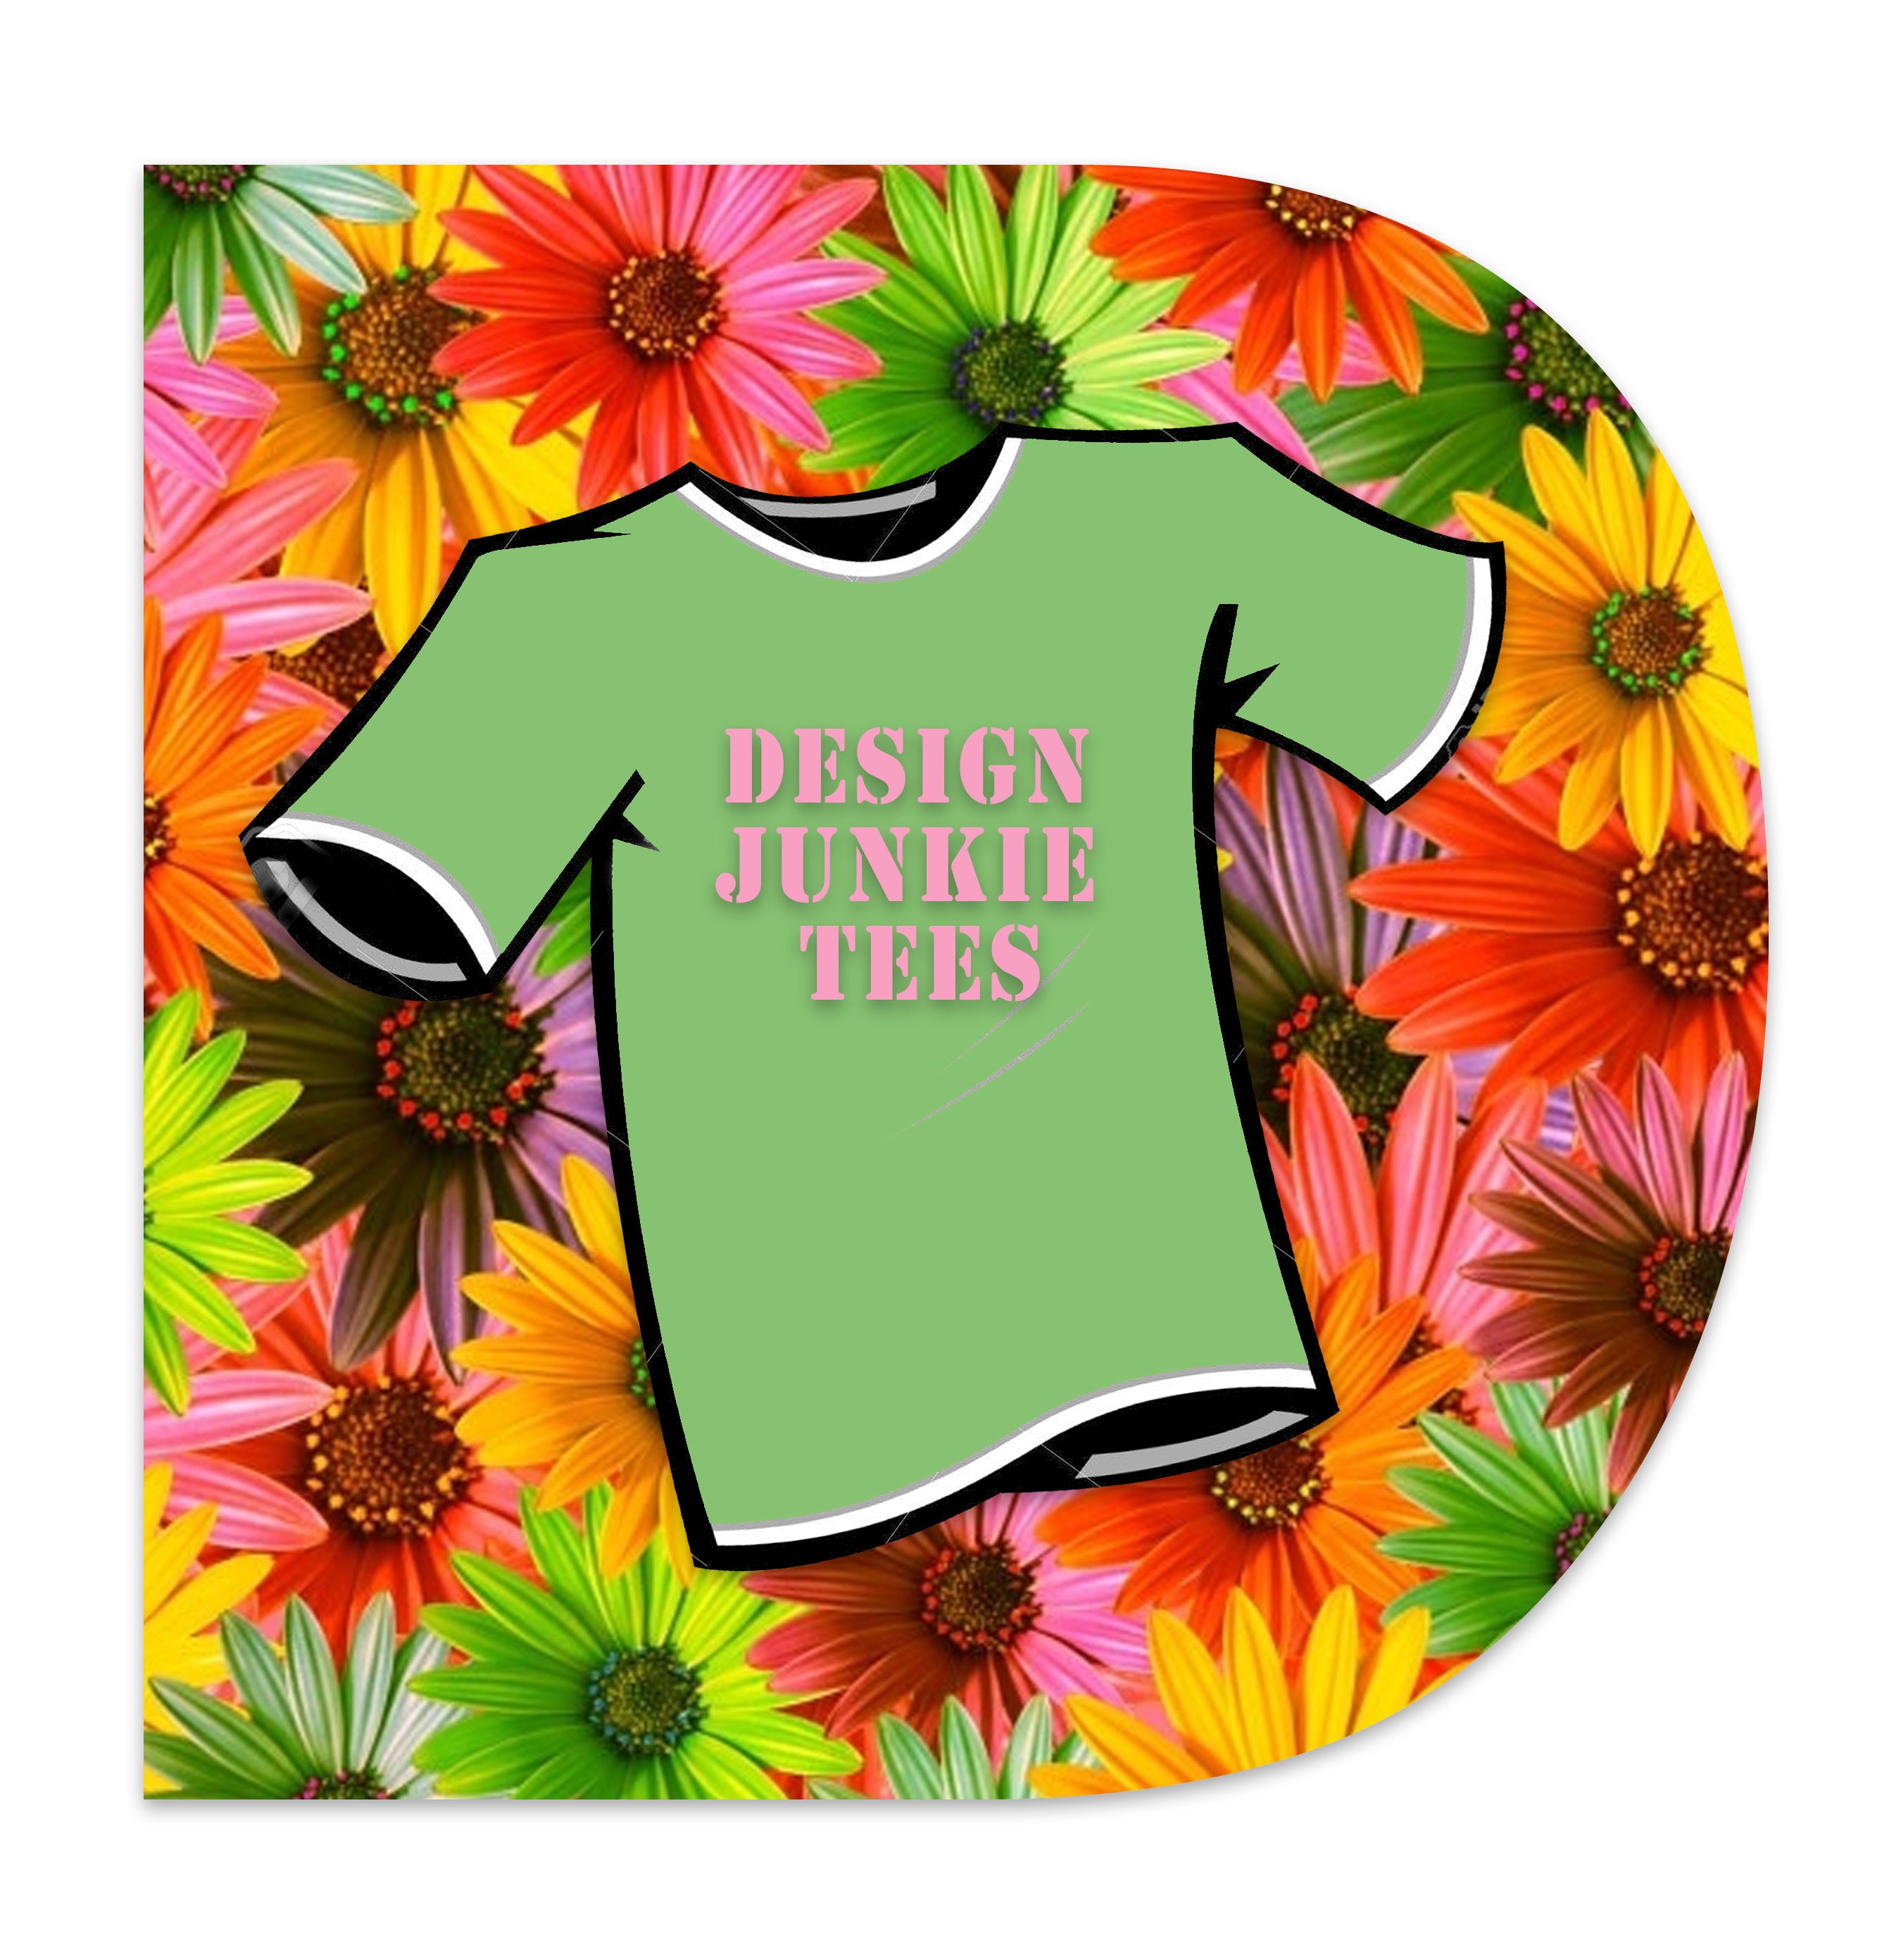 T-shirt Design (Graphic Design)